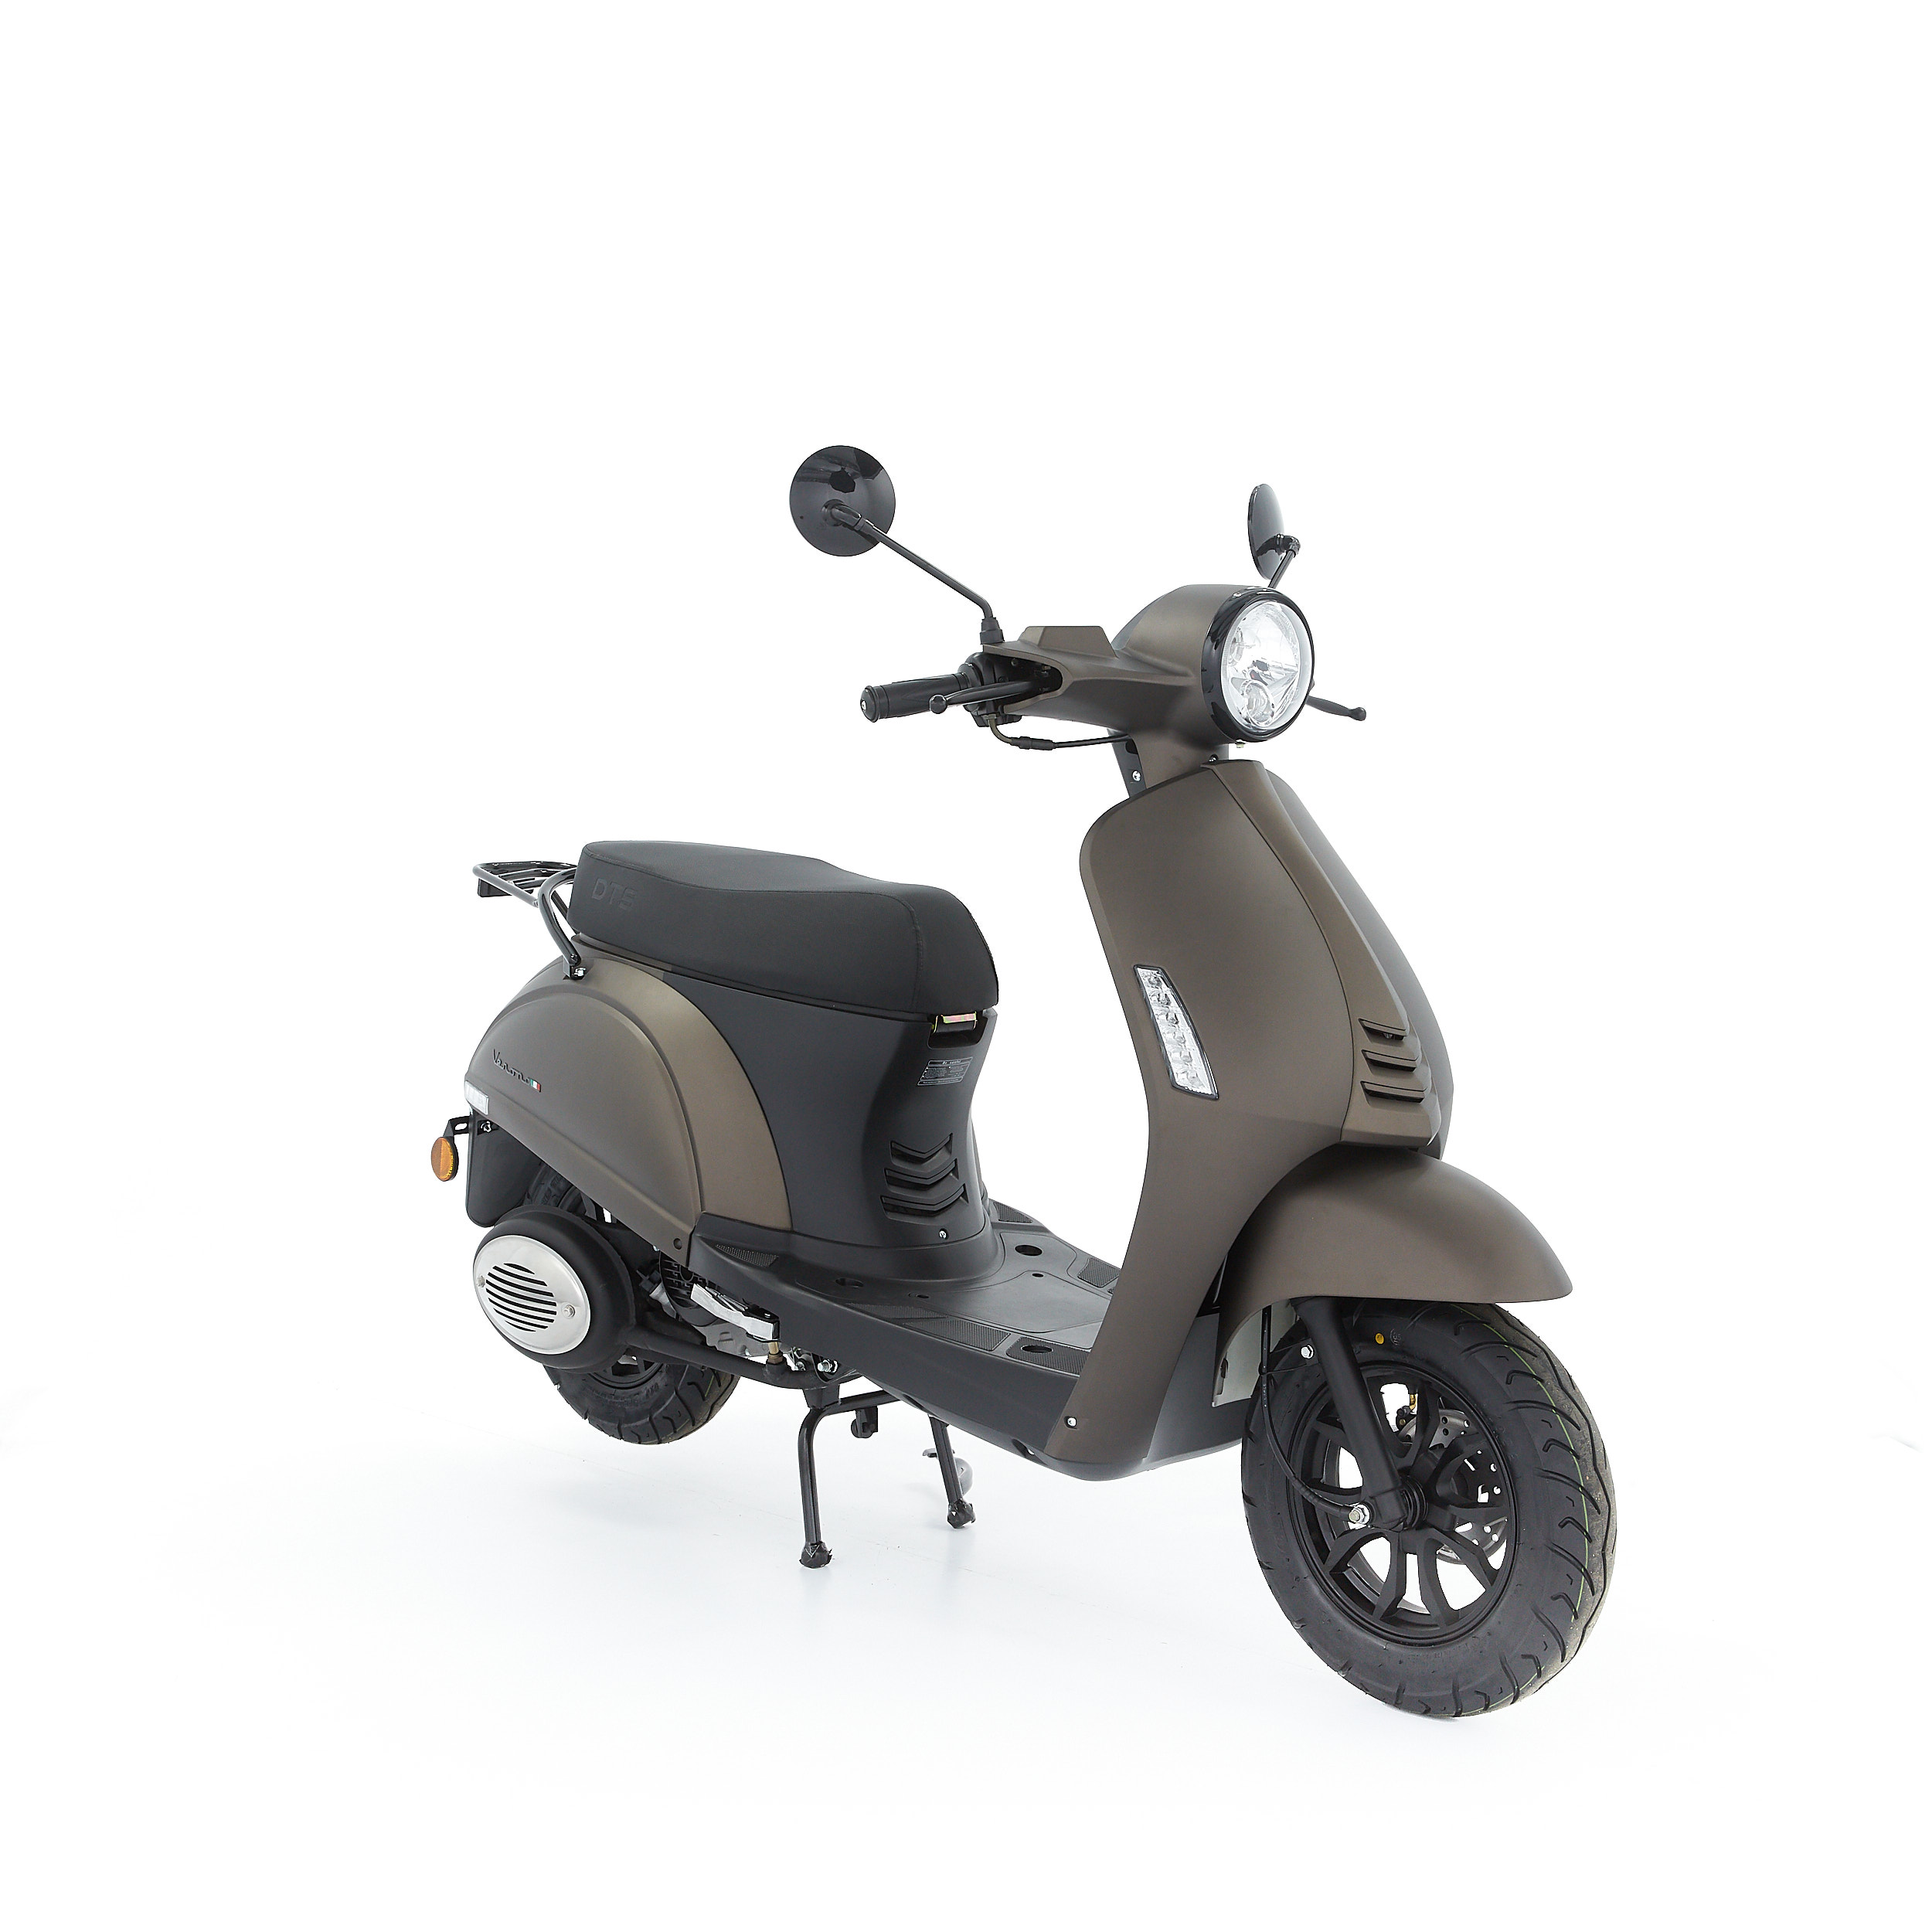 Vooruitzien Opnemen door elkaar haspelen DTS Verona Mat titanium scooter kopen bij Central Scooters